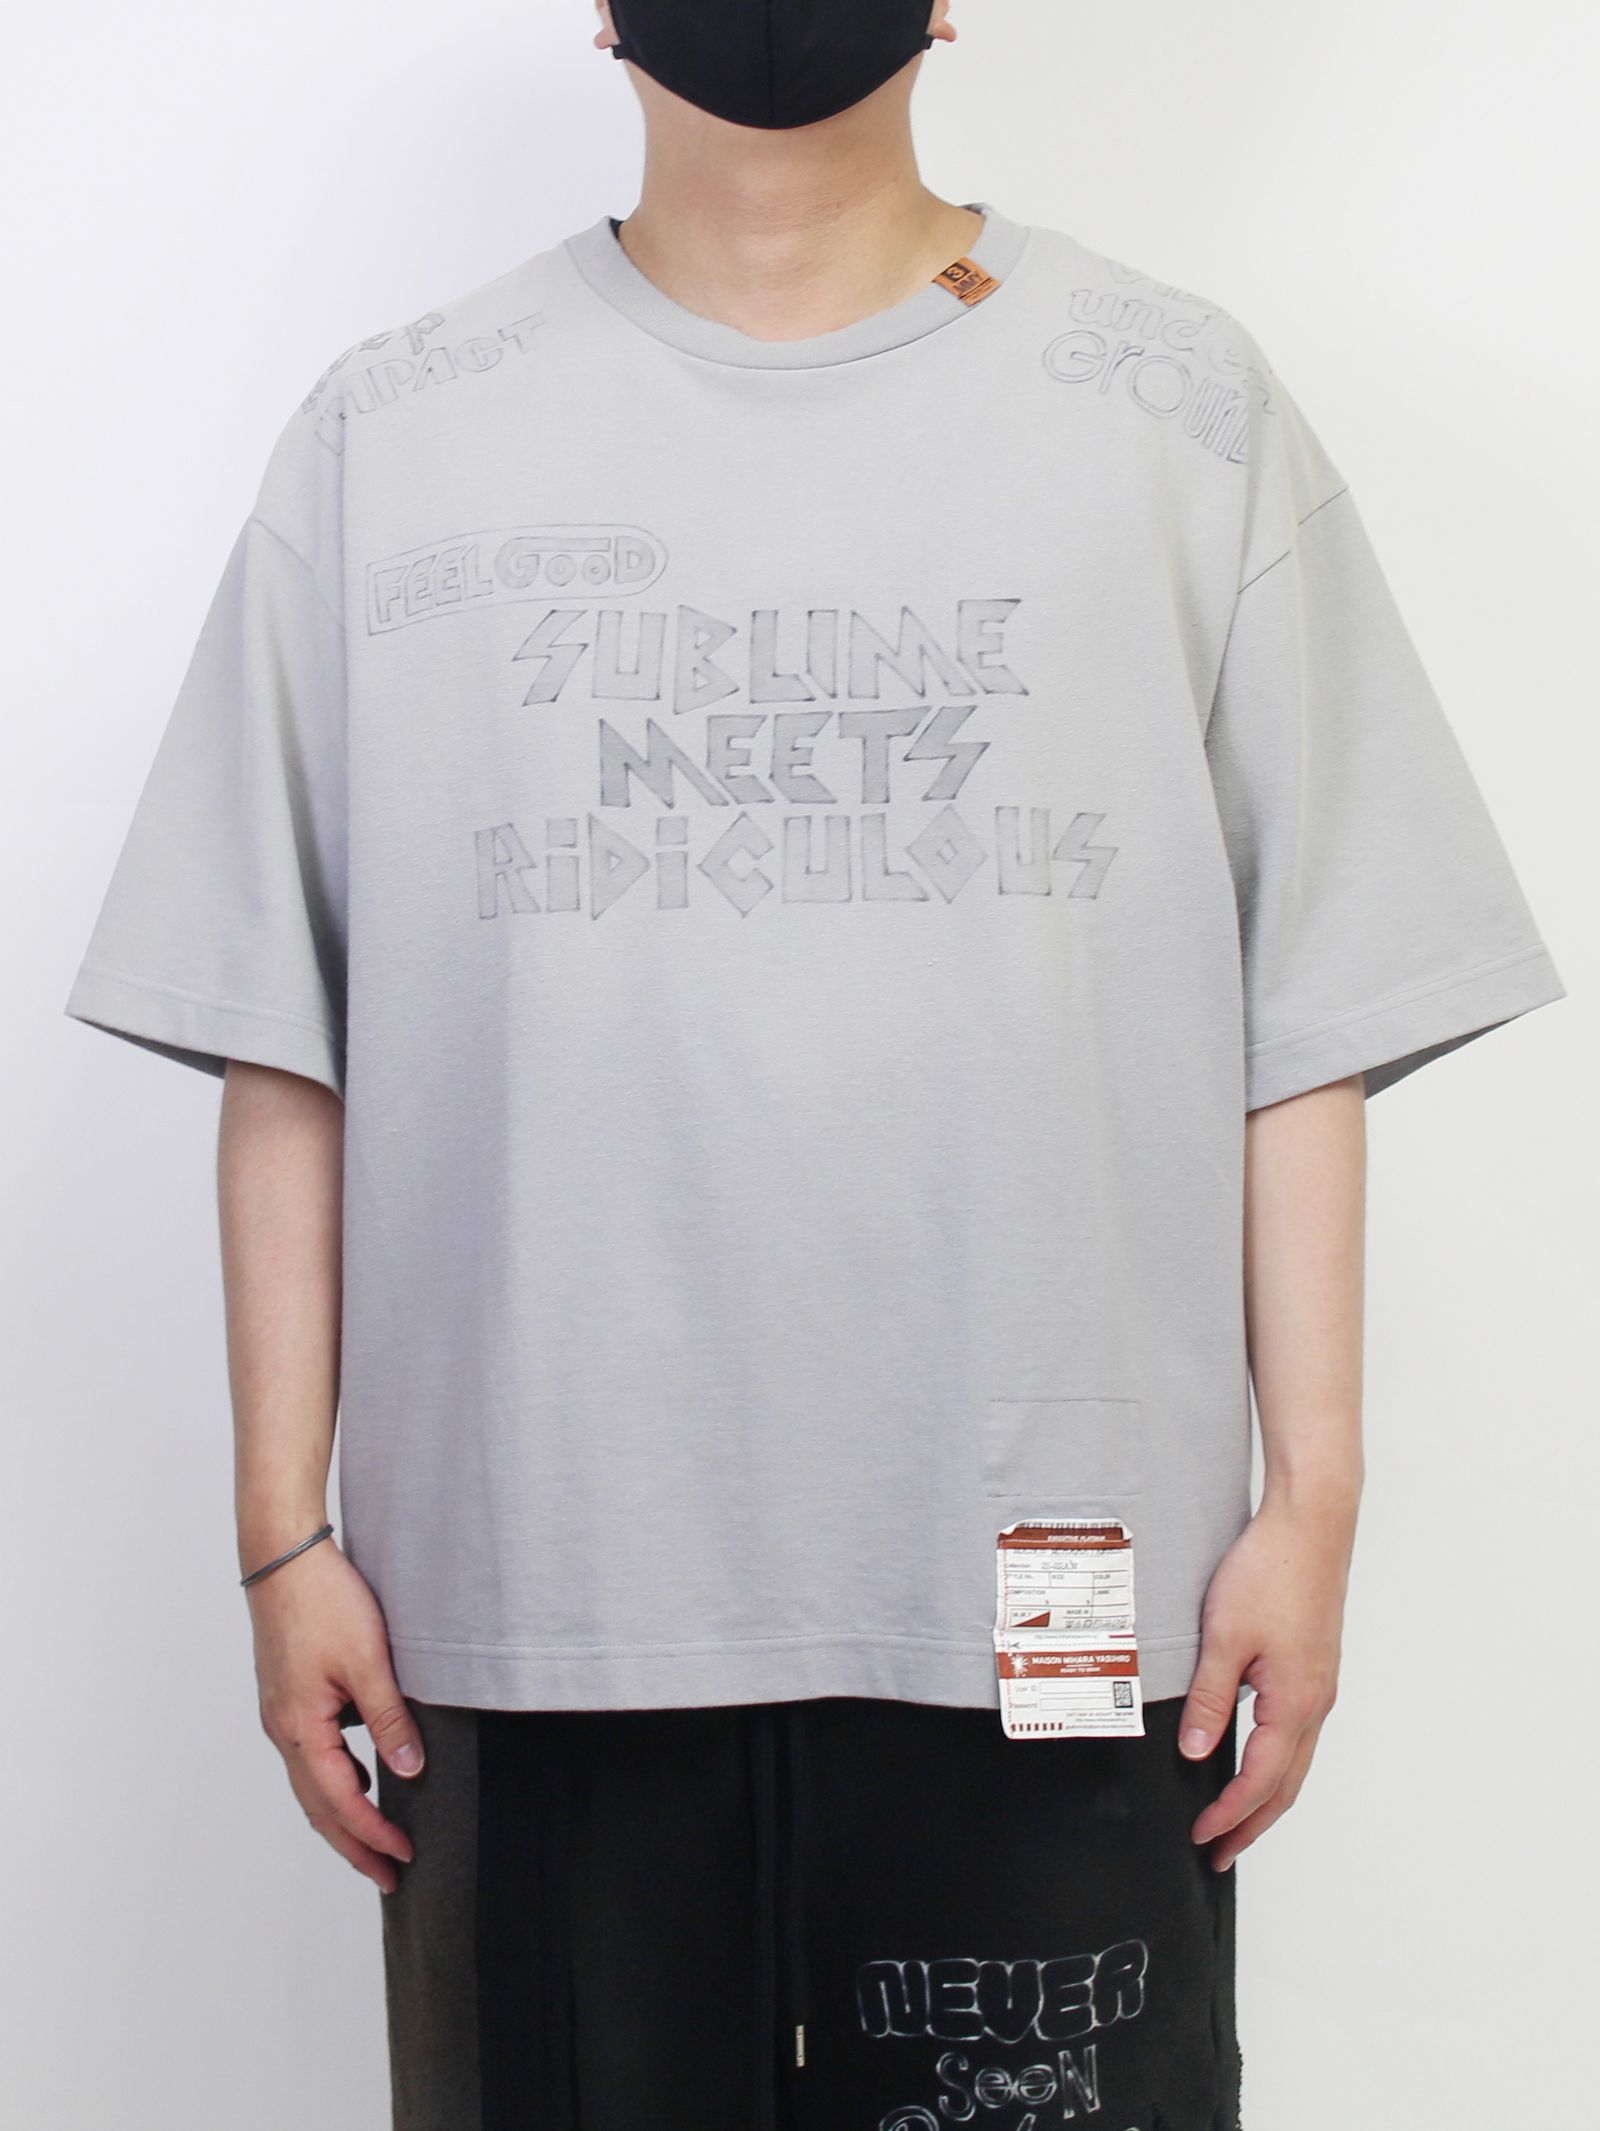 Maison MIHARA YASUHIRO - S.M.R Printed T-shirt - プリントTシャツ